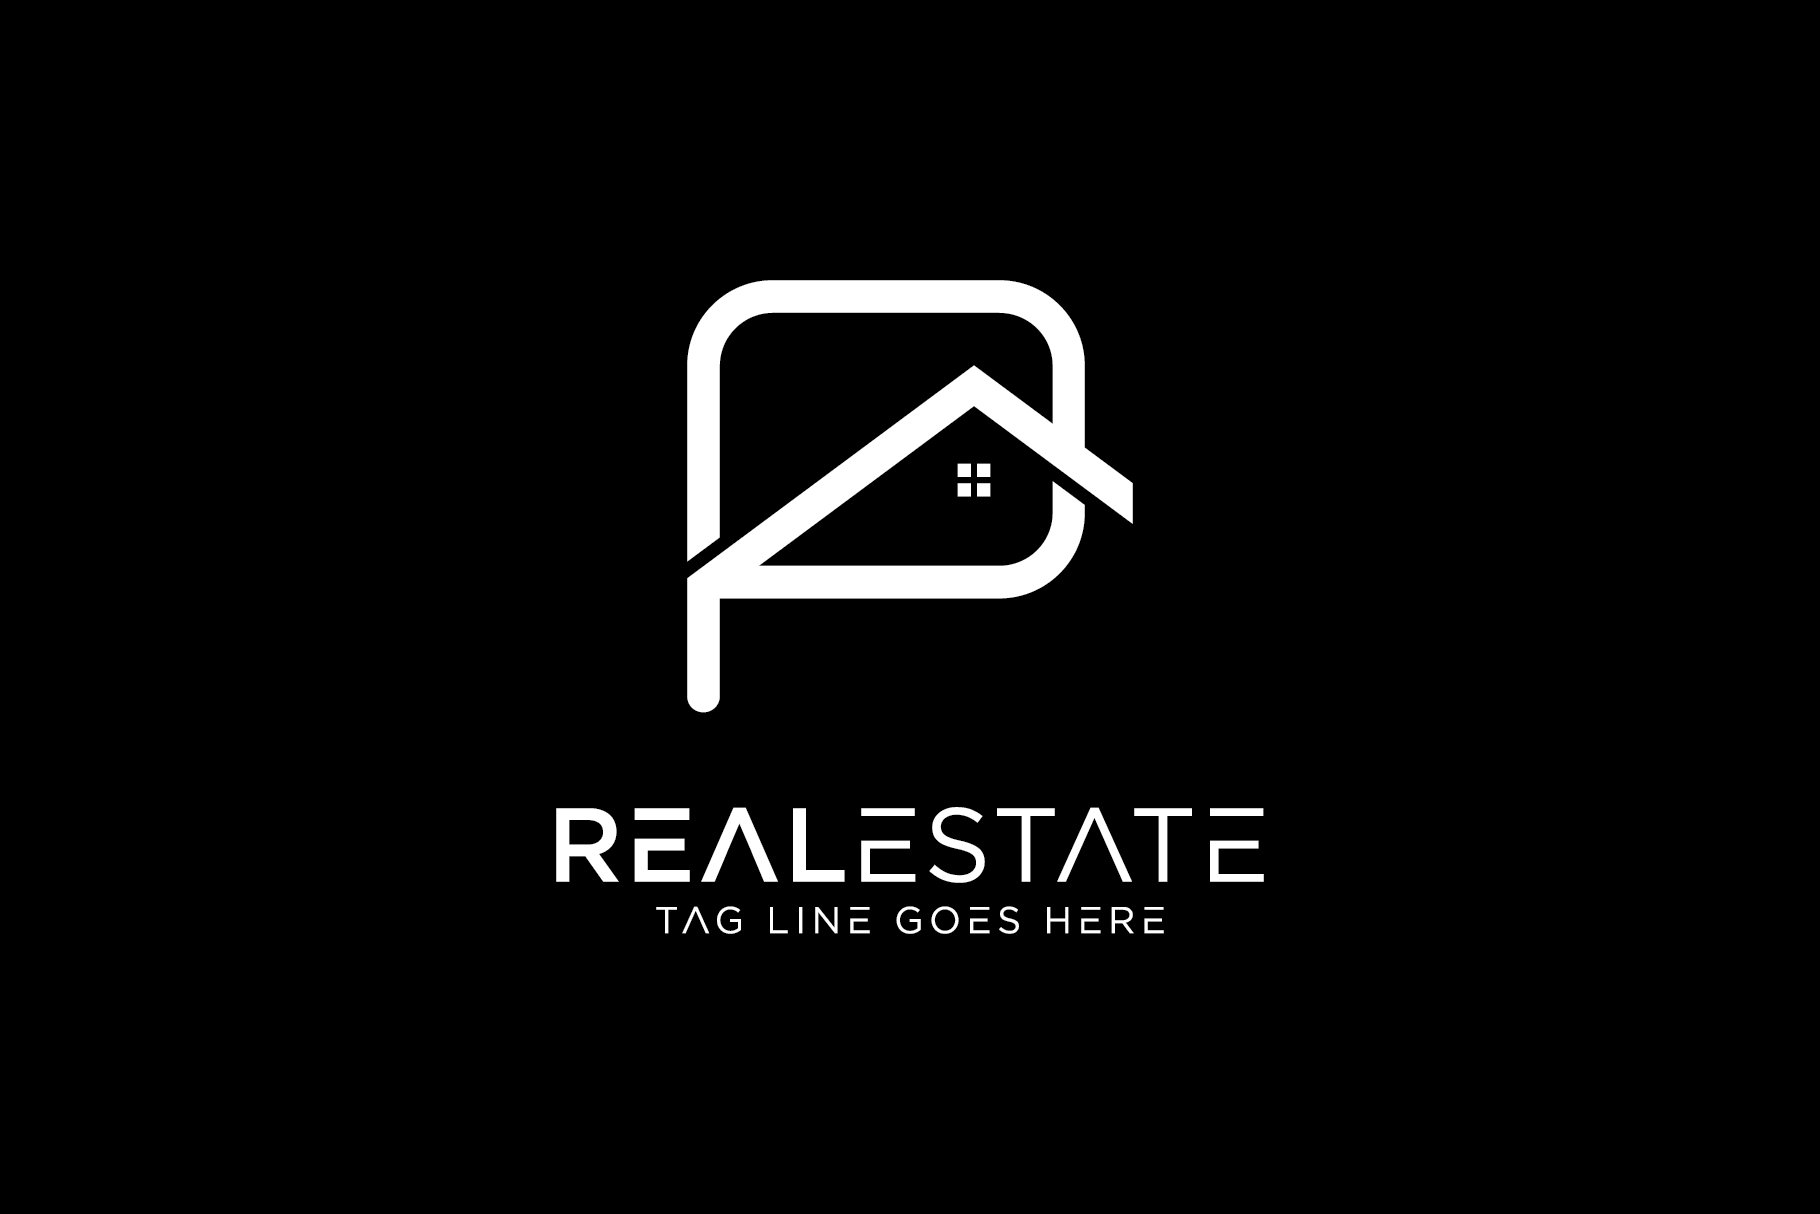 p real estate logo 2 01 746